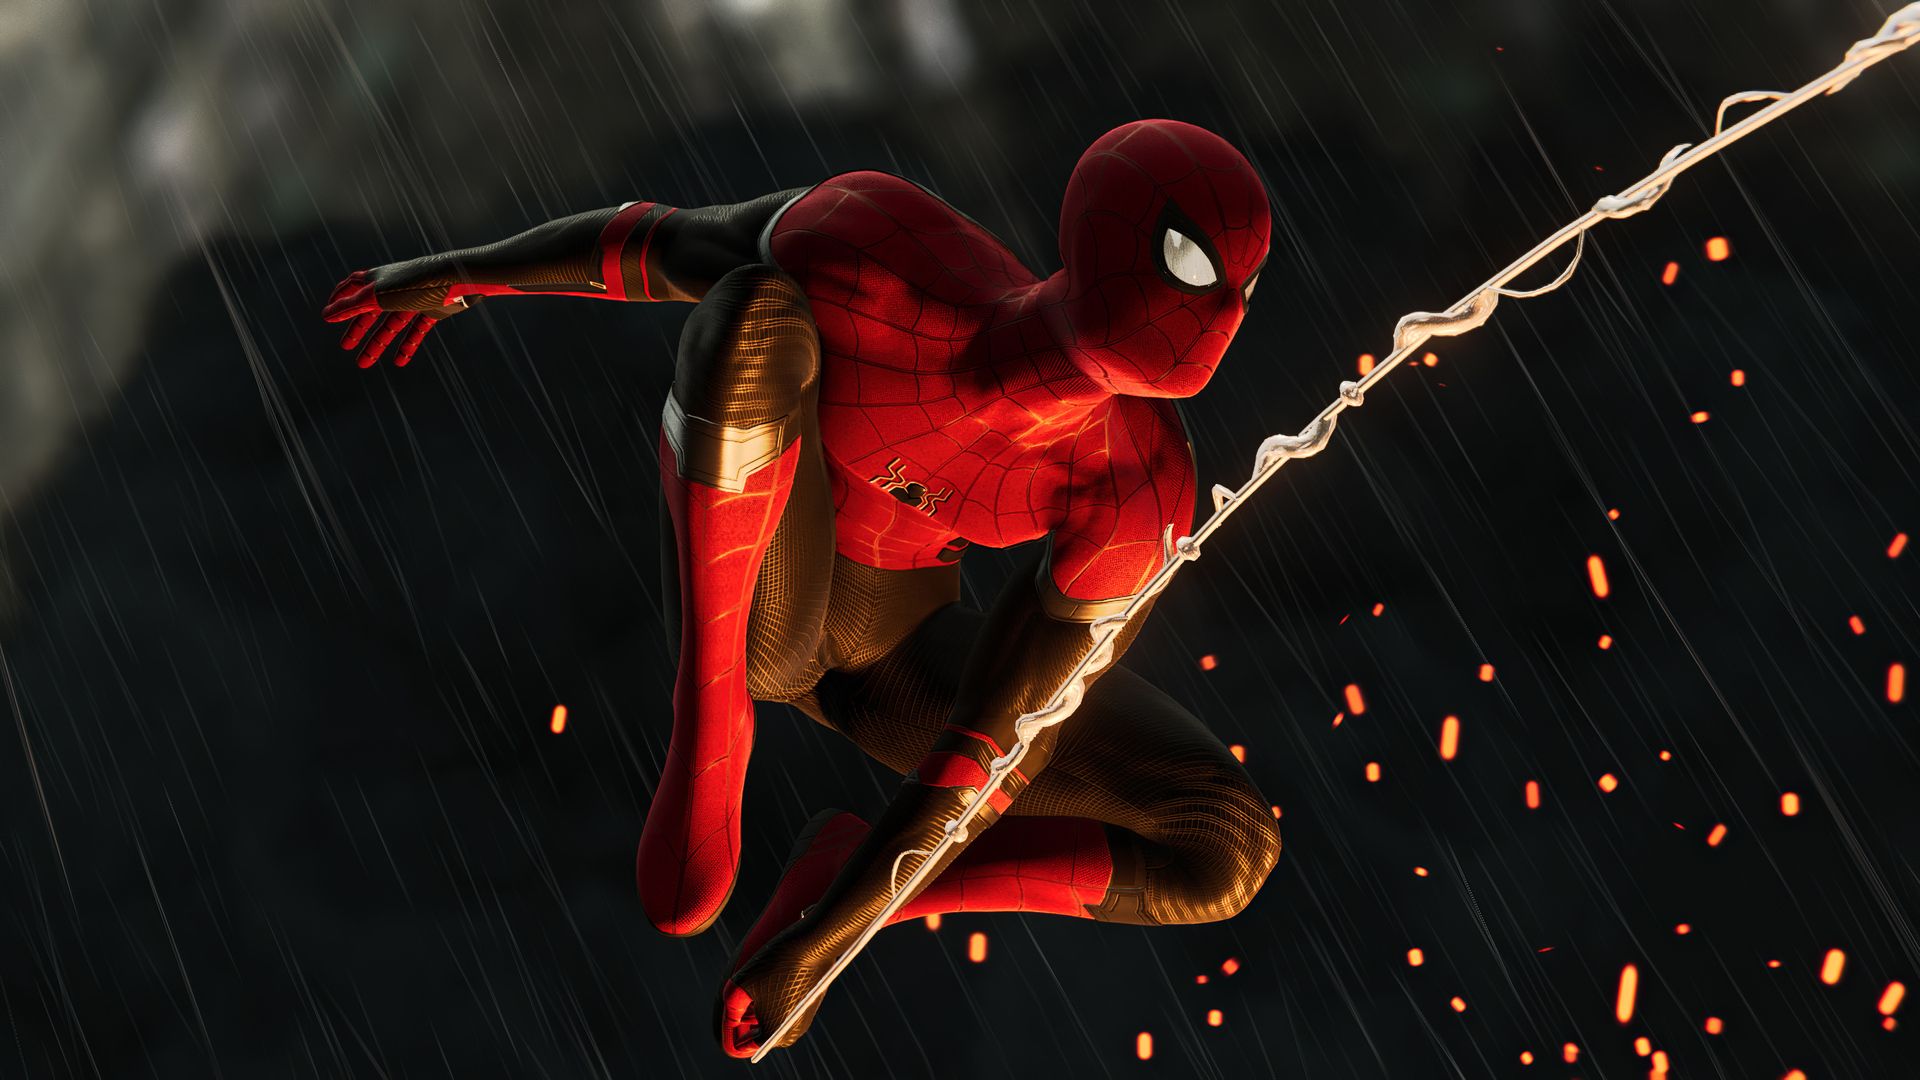 Sắp có một bộ phim mới của Spider Man và chắc chắn rằng fan hâm mộ sẽ không muốn bỏ lỡ. Xem hình ảnh liên quan để nhanh chóng cập nhật trang phục và tướng nhân vật mới nhất của Spider Man.